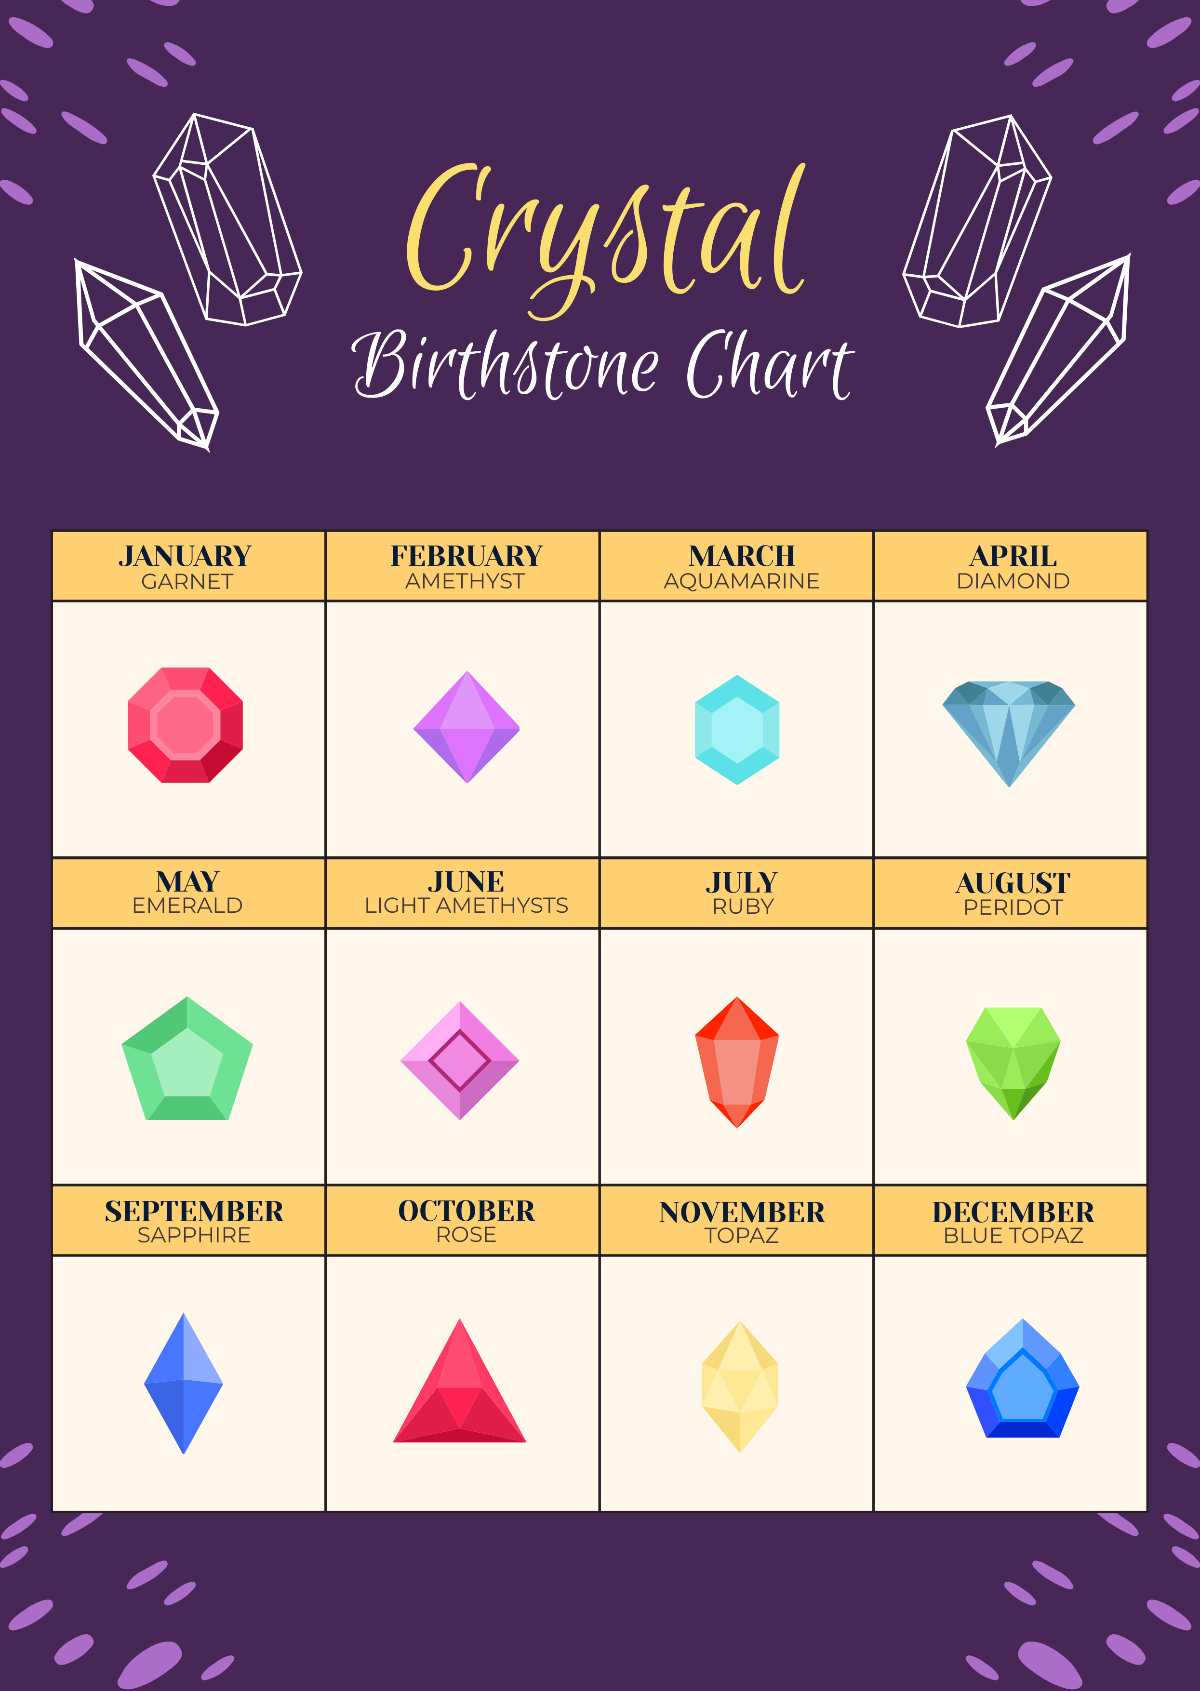 Crystal Birthstone Chart